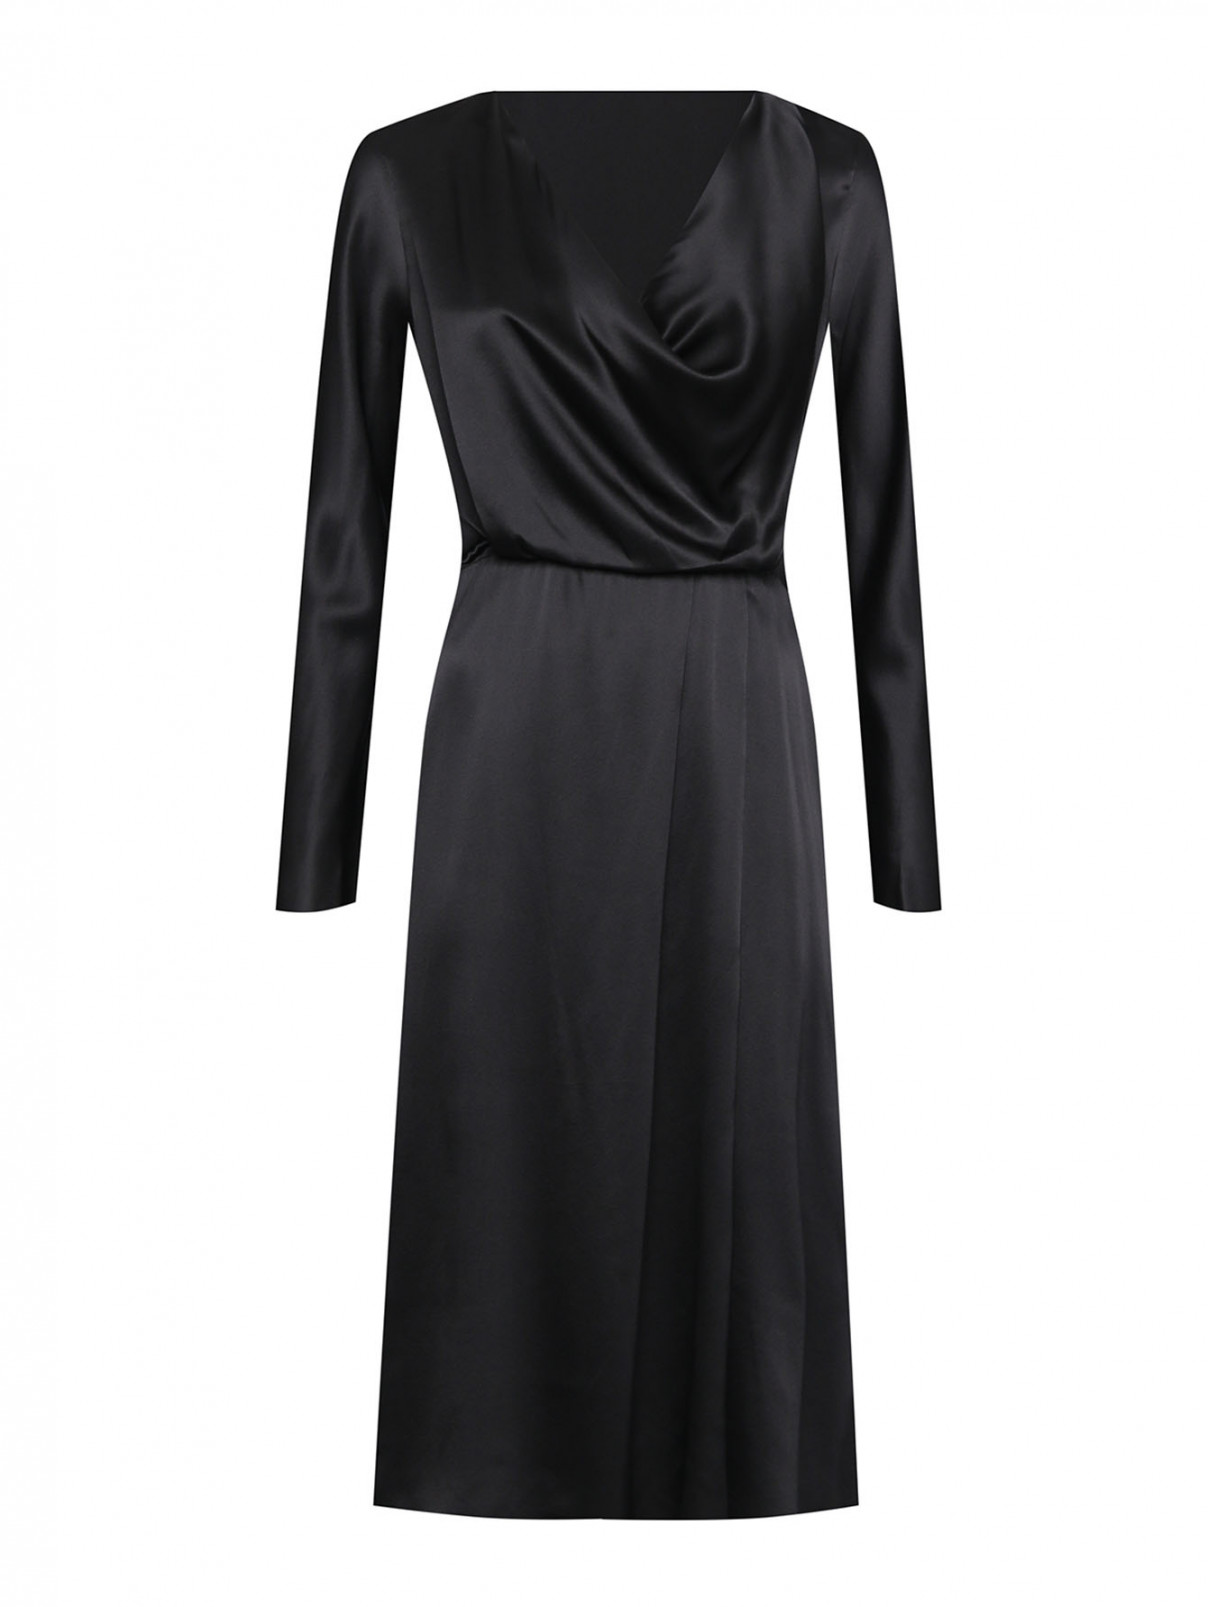 Платье-миди из шелка с драпировкой Dorothee Schumacher  –  Общий вид  – Цвет:  Черный